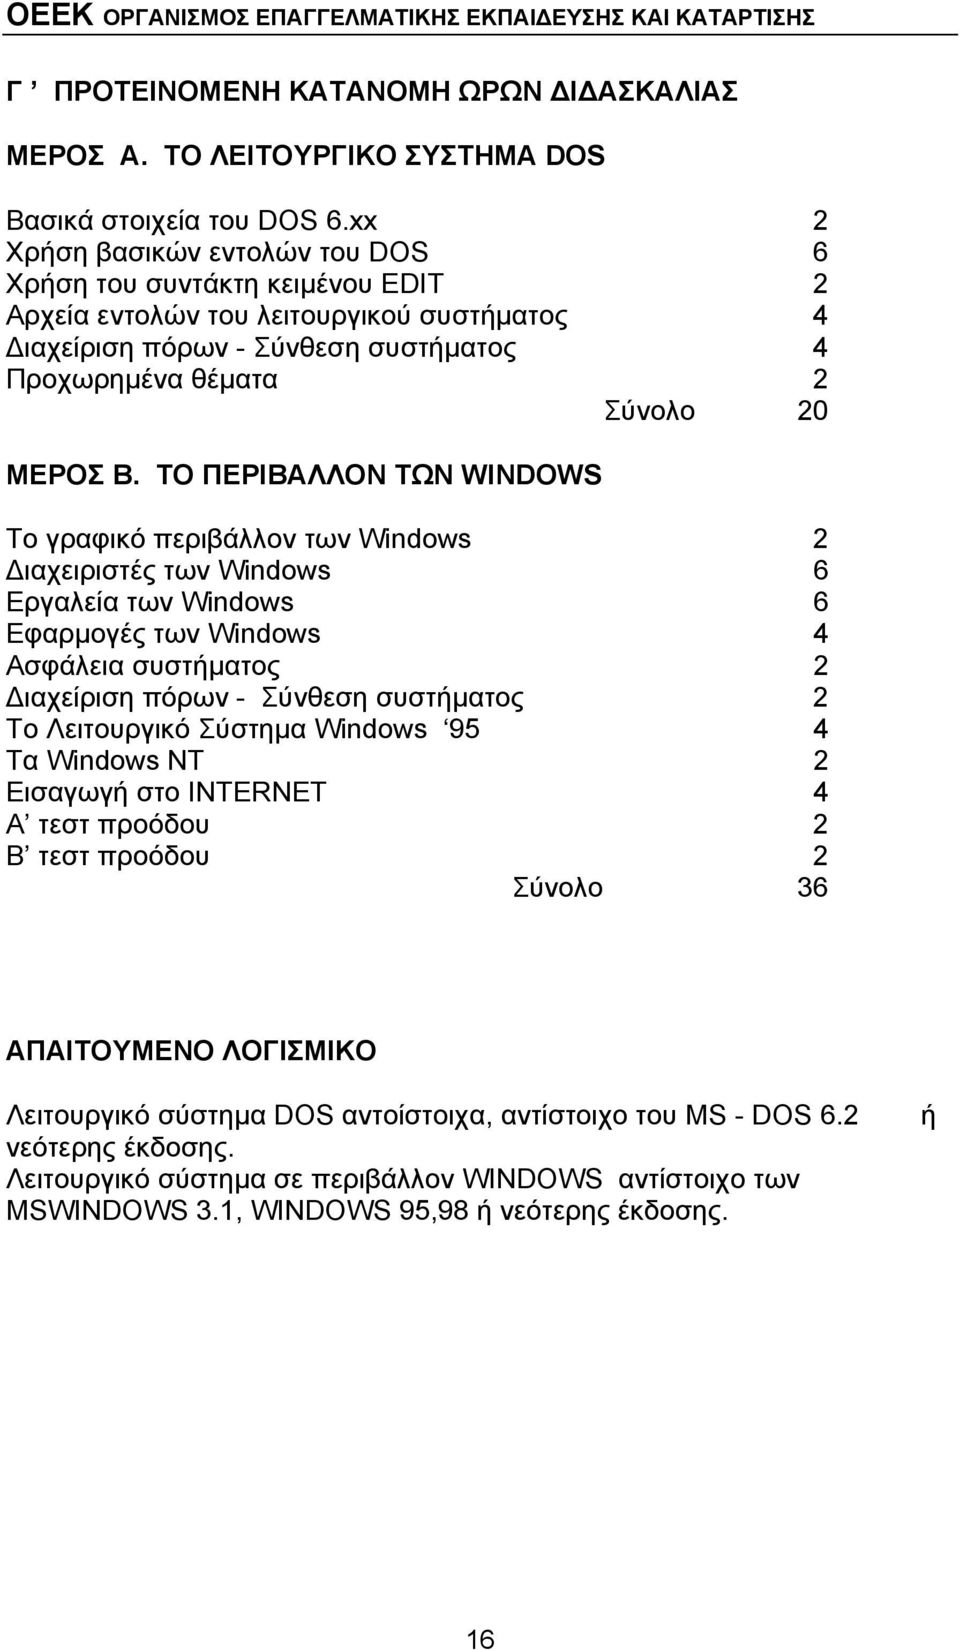 ΤΟ ΠΕΡΙΒΑΛΛΟΝ ΤΩΝ WINDOWS Το γραφικό περιβάλλον των Windows 2 Διαχειριστές των Windows 6 Εργαλεία των Windows 6 Εφαρμογές των Windows 4 Ασφάλεια συστήματος 2 Διαχείριση πόρων - Σύνθεση συστήματος 2